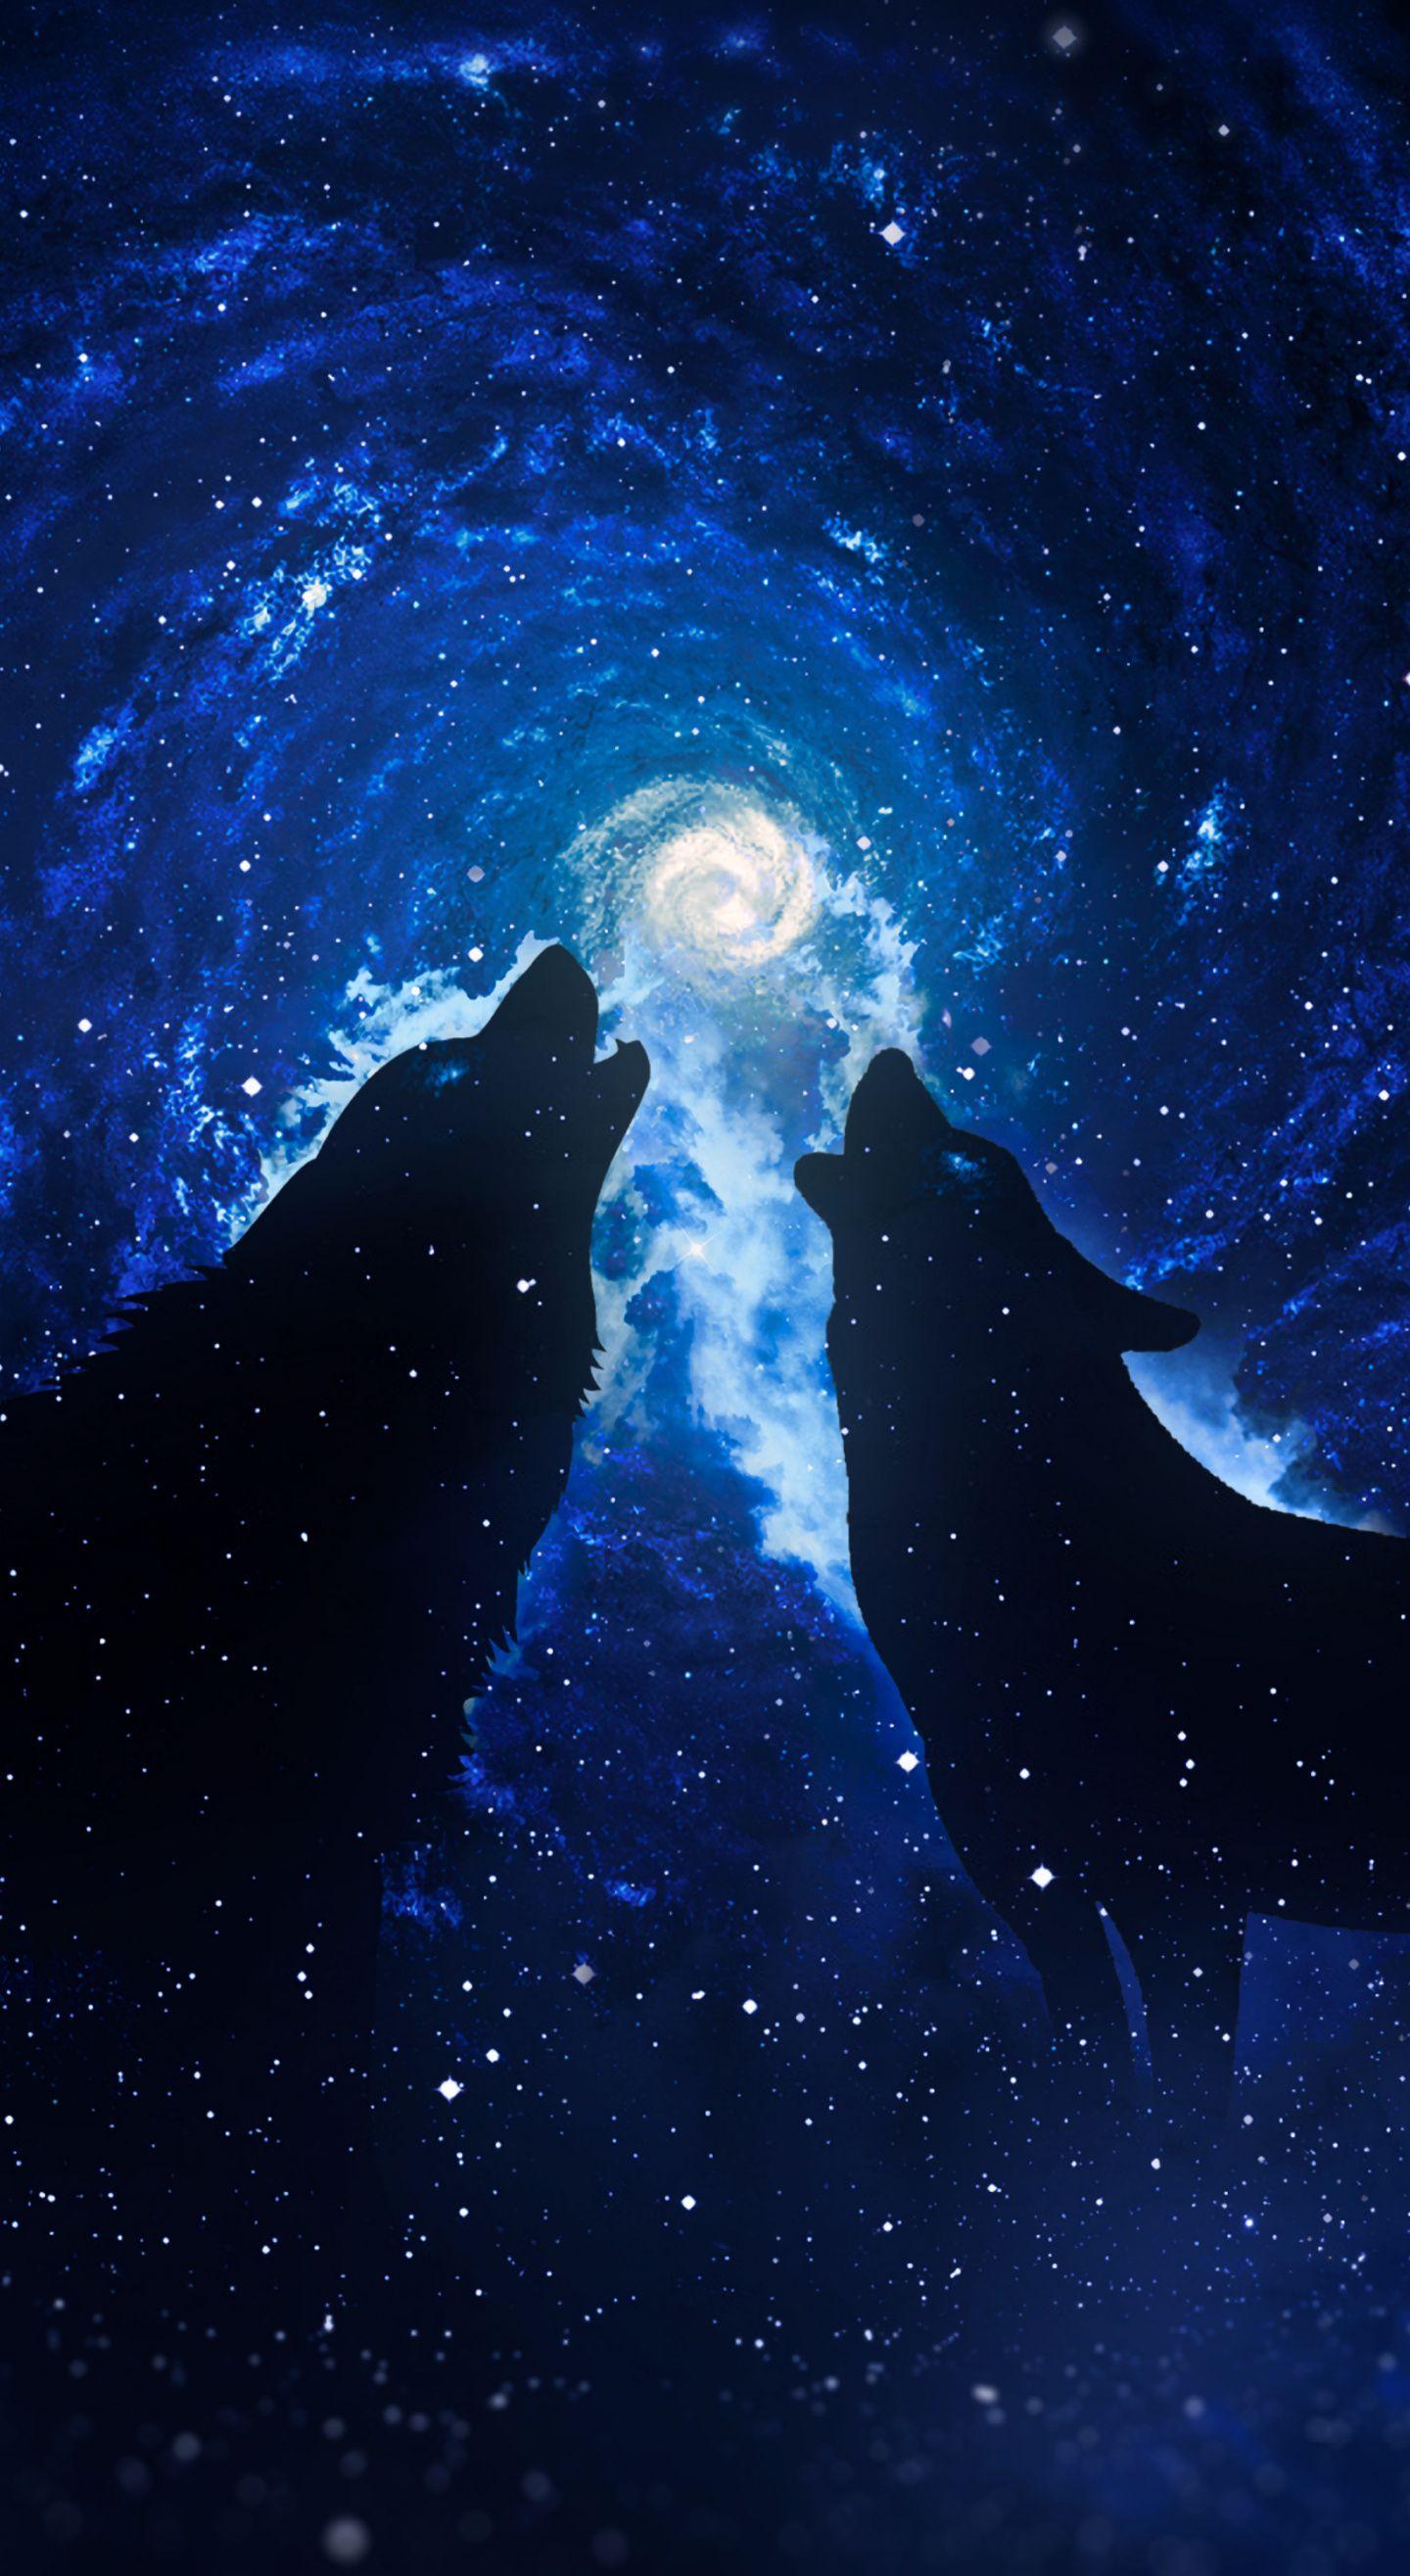 1440x2630 Tải xuống 1440x2630 hình nền chó sói, bóng, bầu trời đầy sao